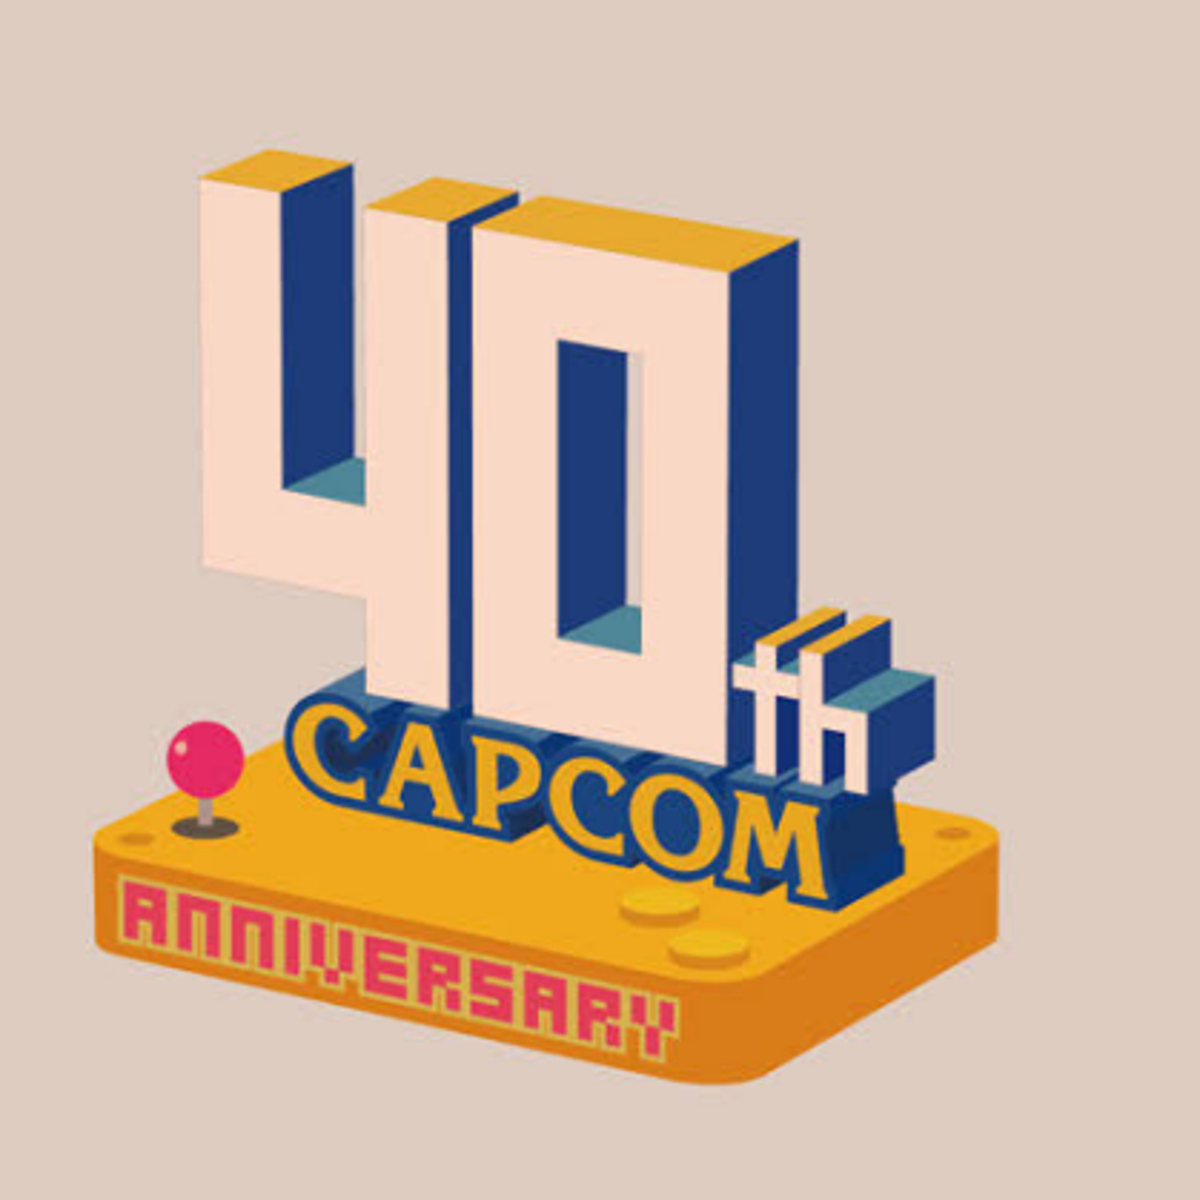 کپکام در ۴۰ سال گذشته ۵۰۰ میلیون نسخه بازی فروخته است